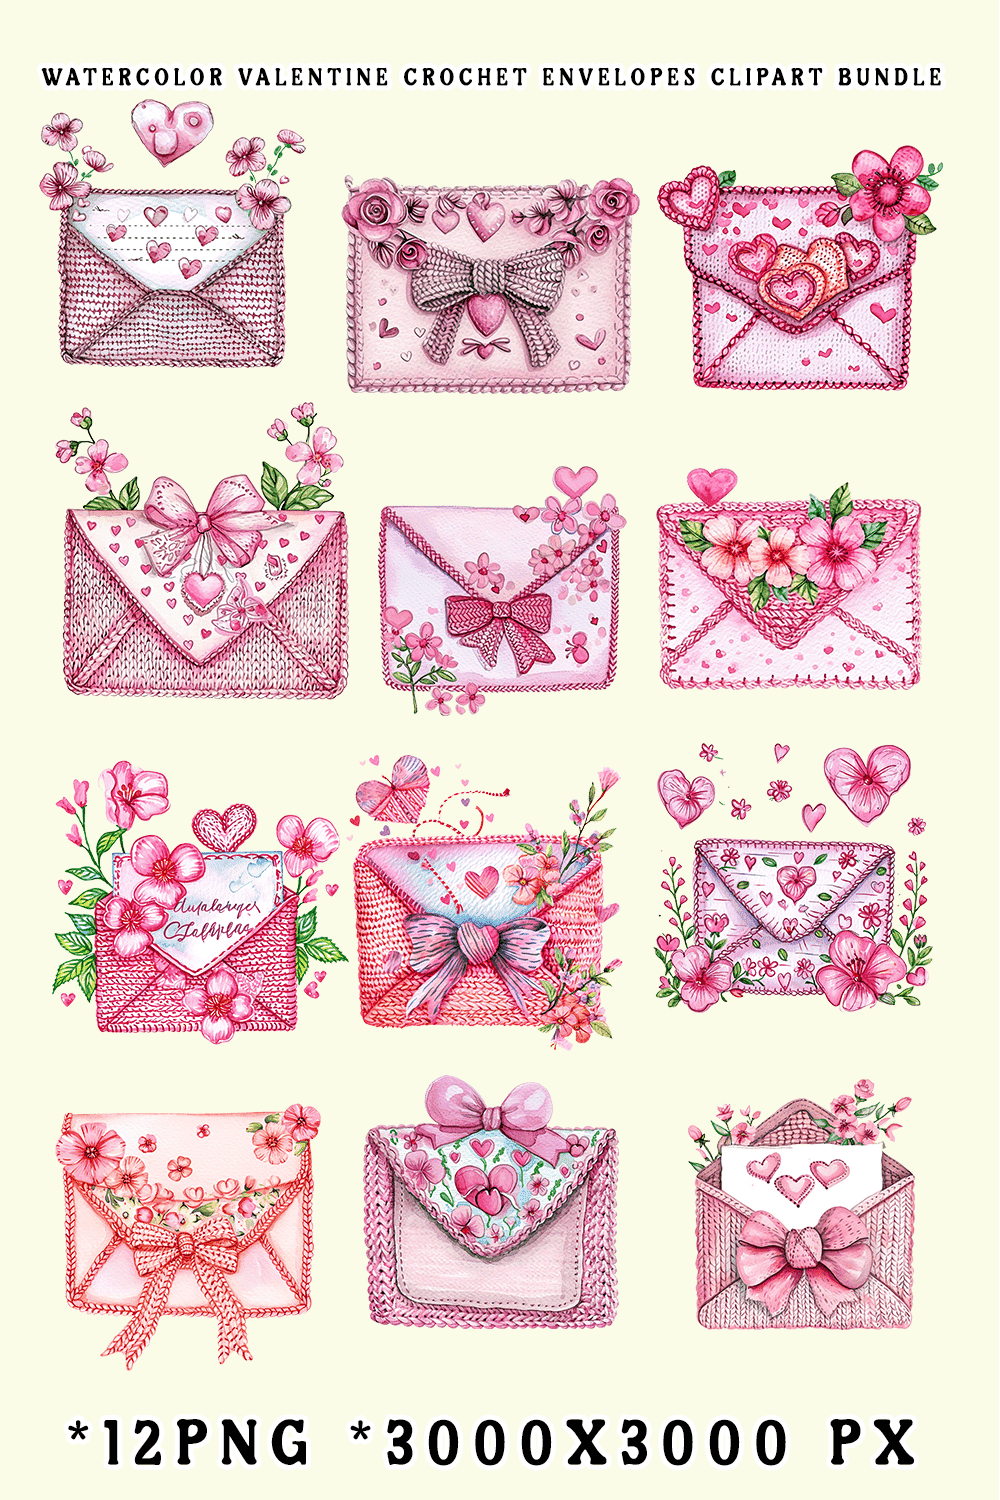 Watercolor Valentine Crochet Envelopes Clipart Bundle pinterest preview image.